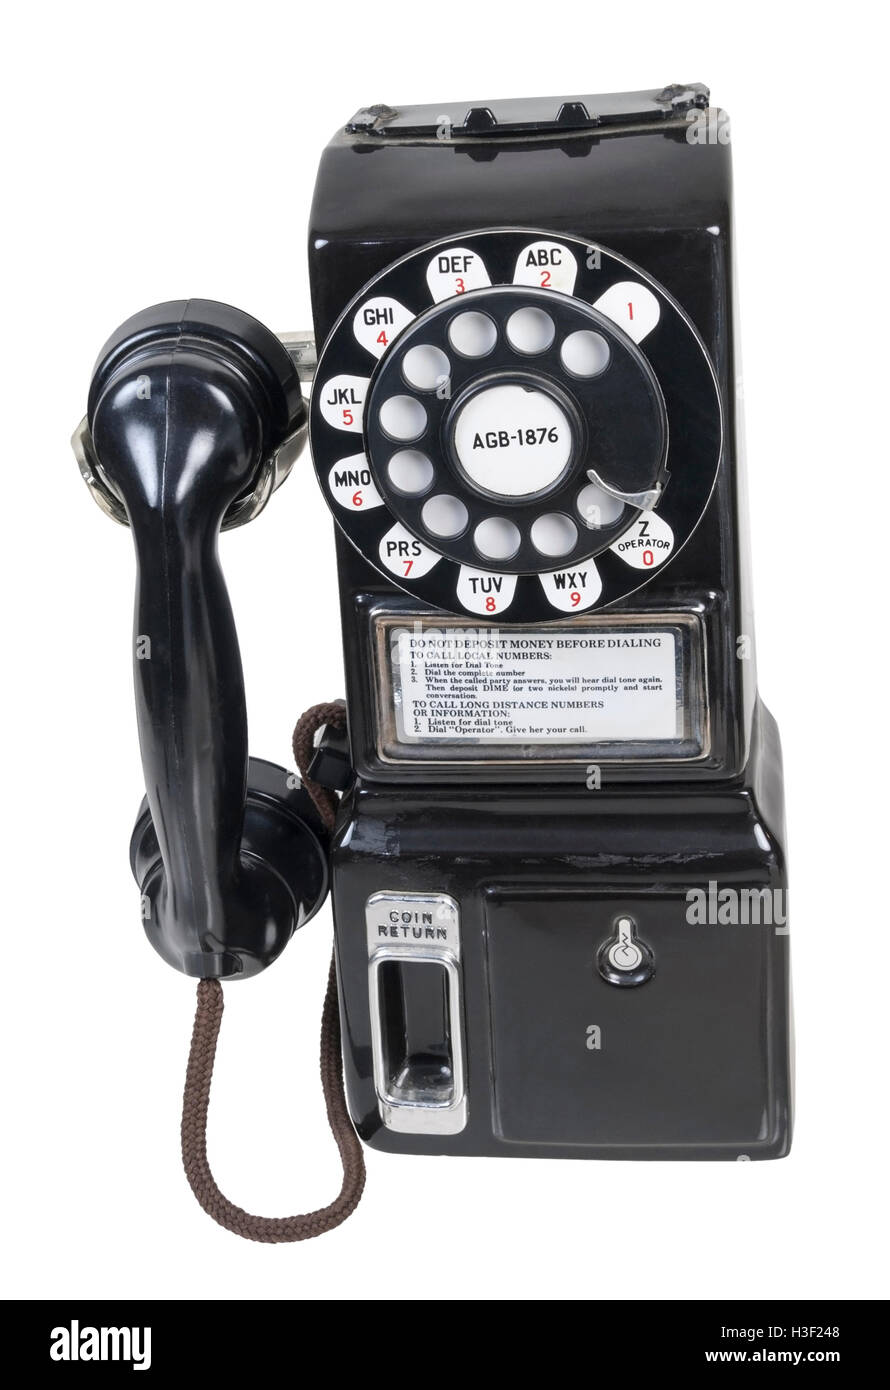 Retro téléphone payant public utilisé pour effectuer des appels téléphoniques - chemin inclus Banque D'Images